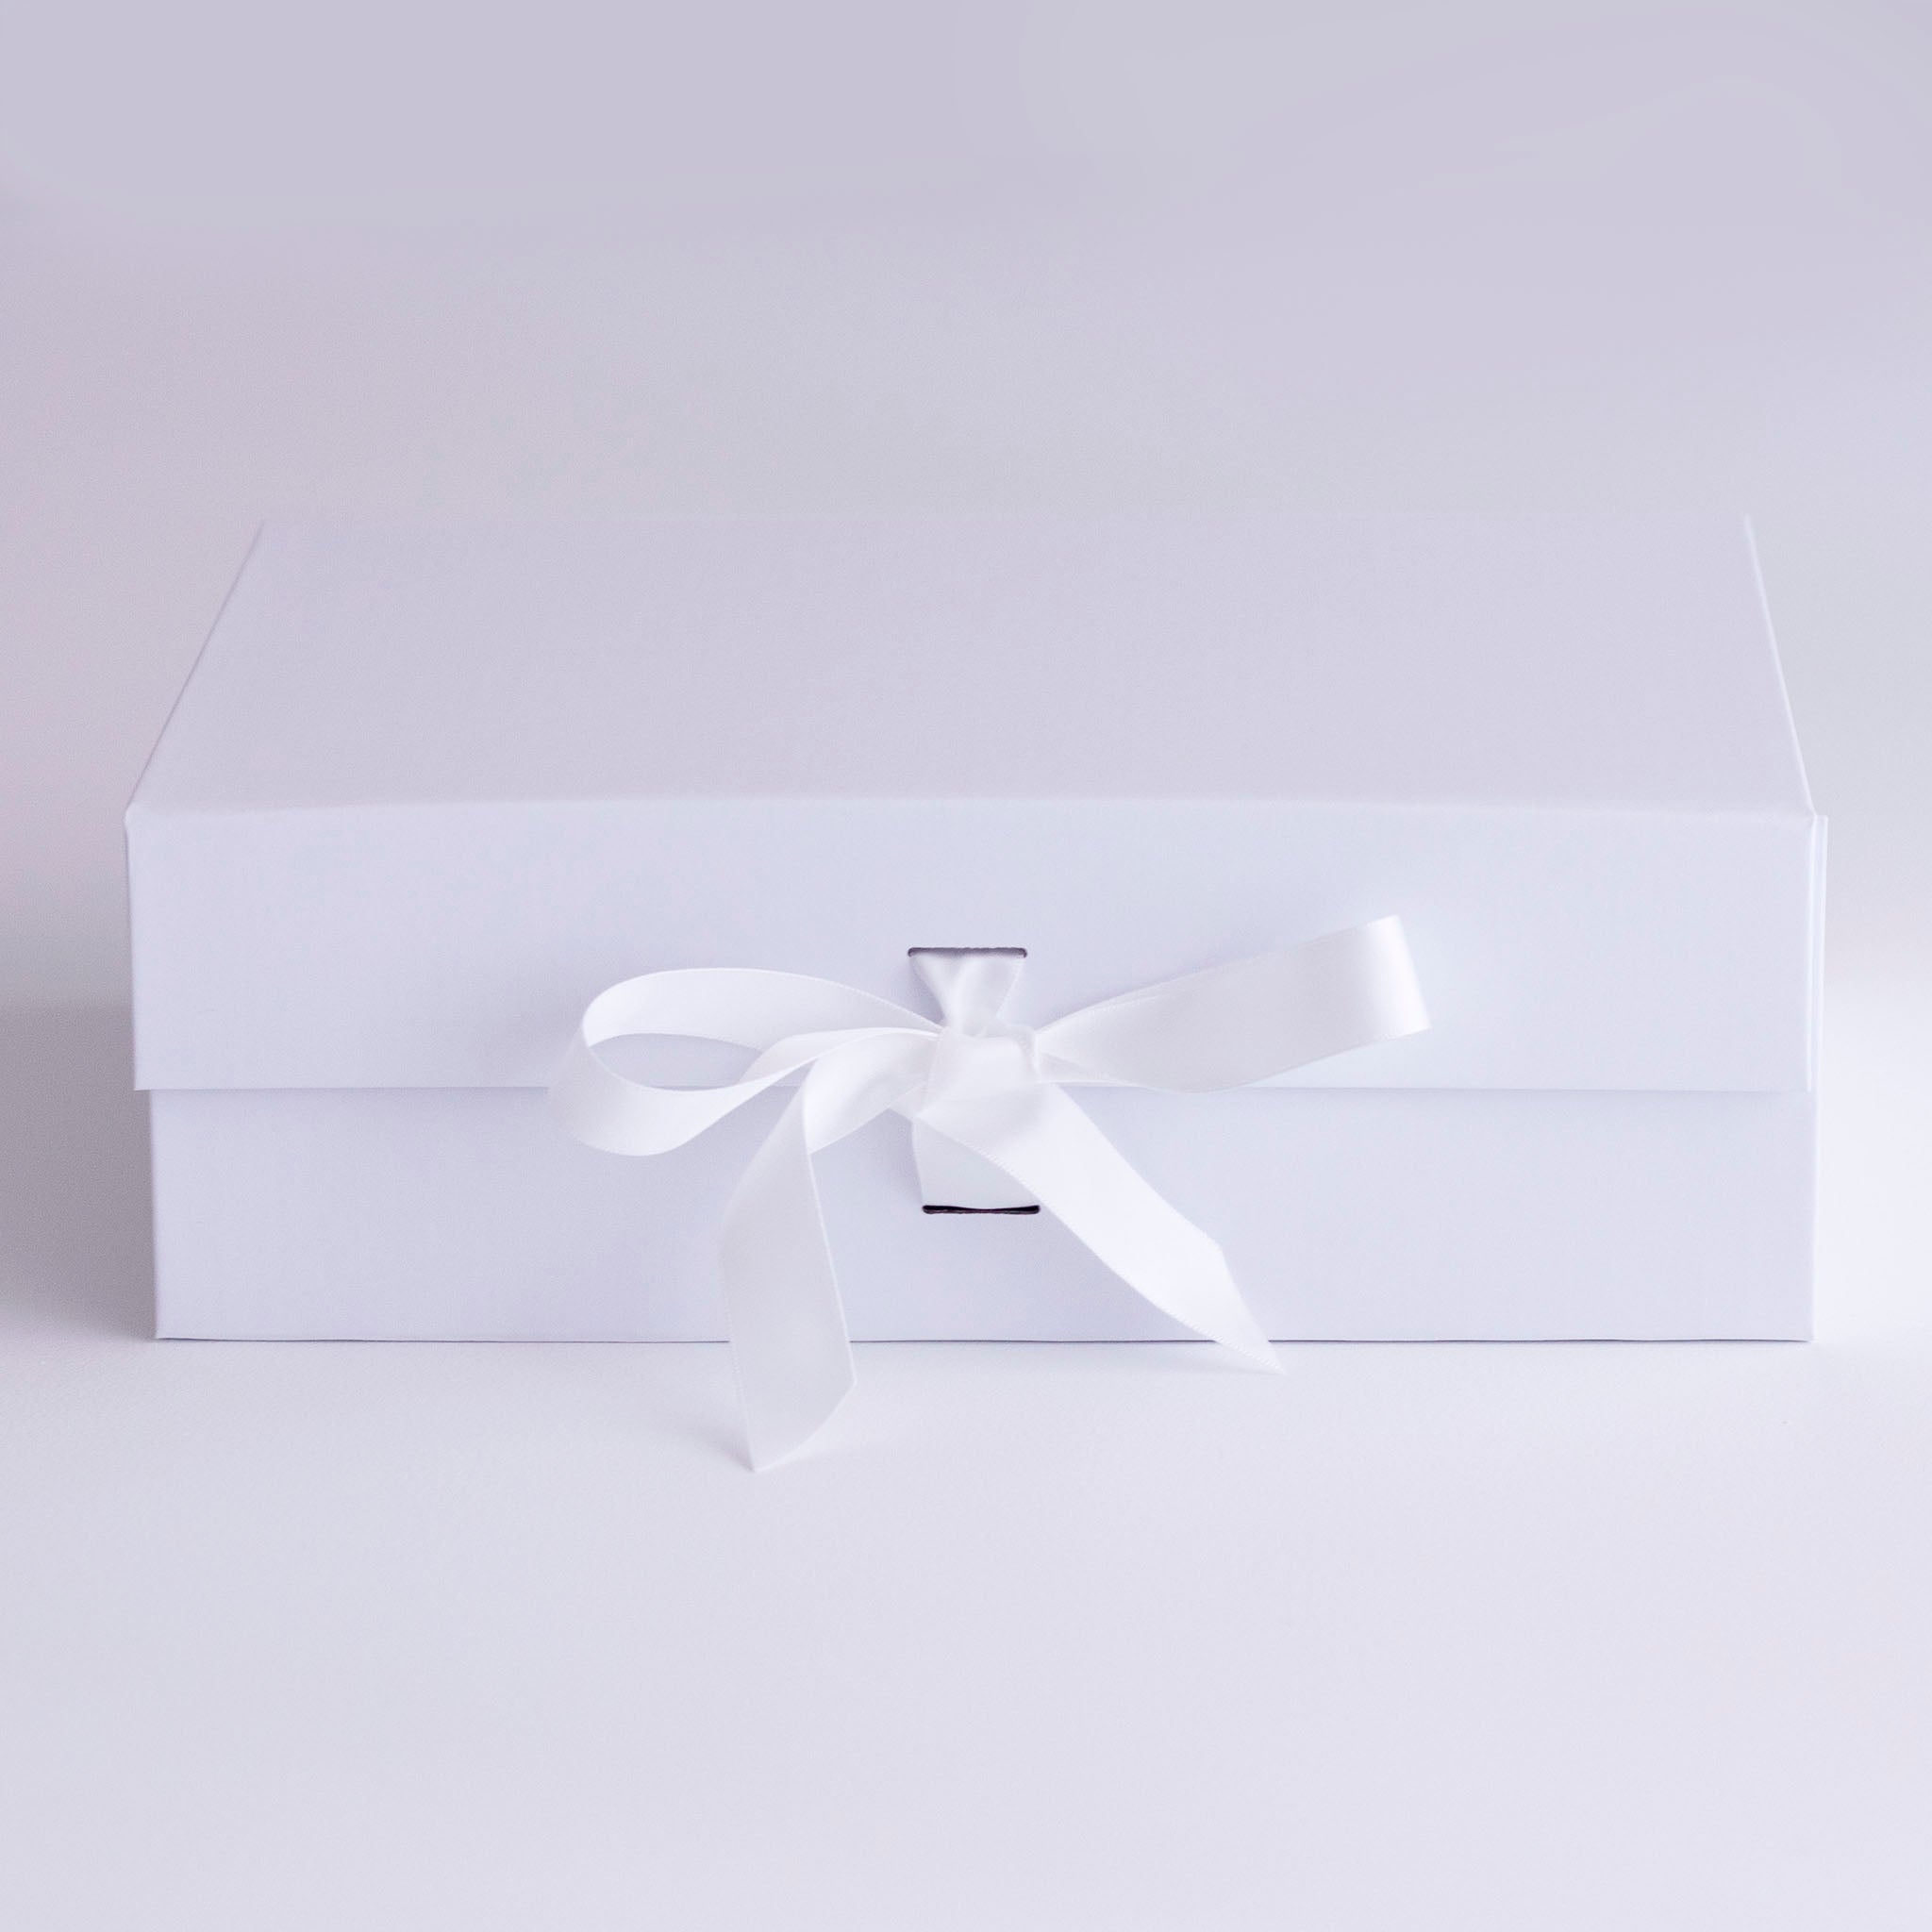 gift box samll with white ribbon